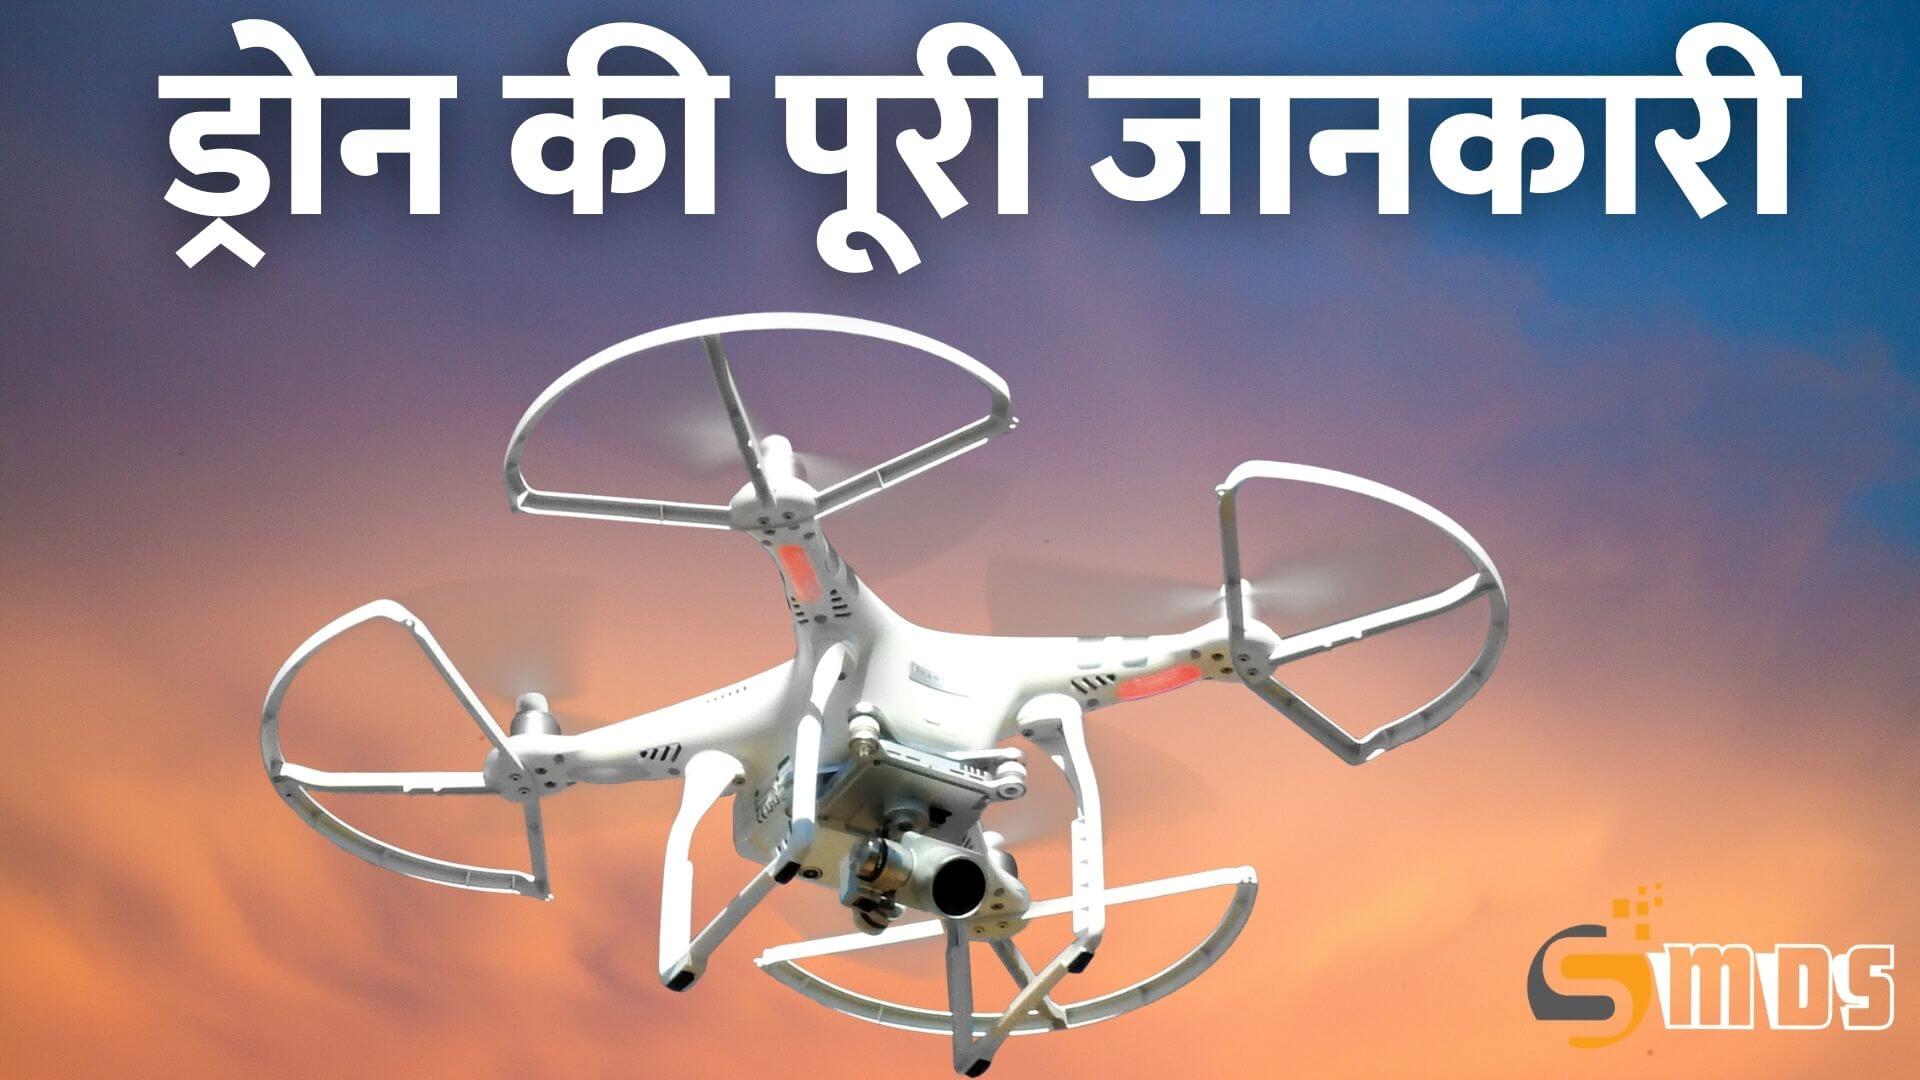 ड्रोन क्या होता है - What is drone in Hindi, drone kya hai, Drone Meaning in Hindi, ड्रोन की उपयोगिता, लाभ या फायदे, ड्रोन के प्रयोग से हानि या नुकसान, ड्रोन की परिभाषा, ड्रोन किसे कहते हैं, ड्रोन क्या चीज है